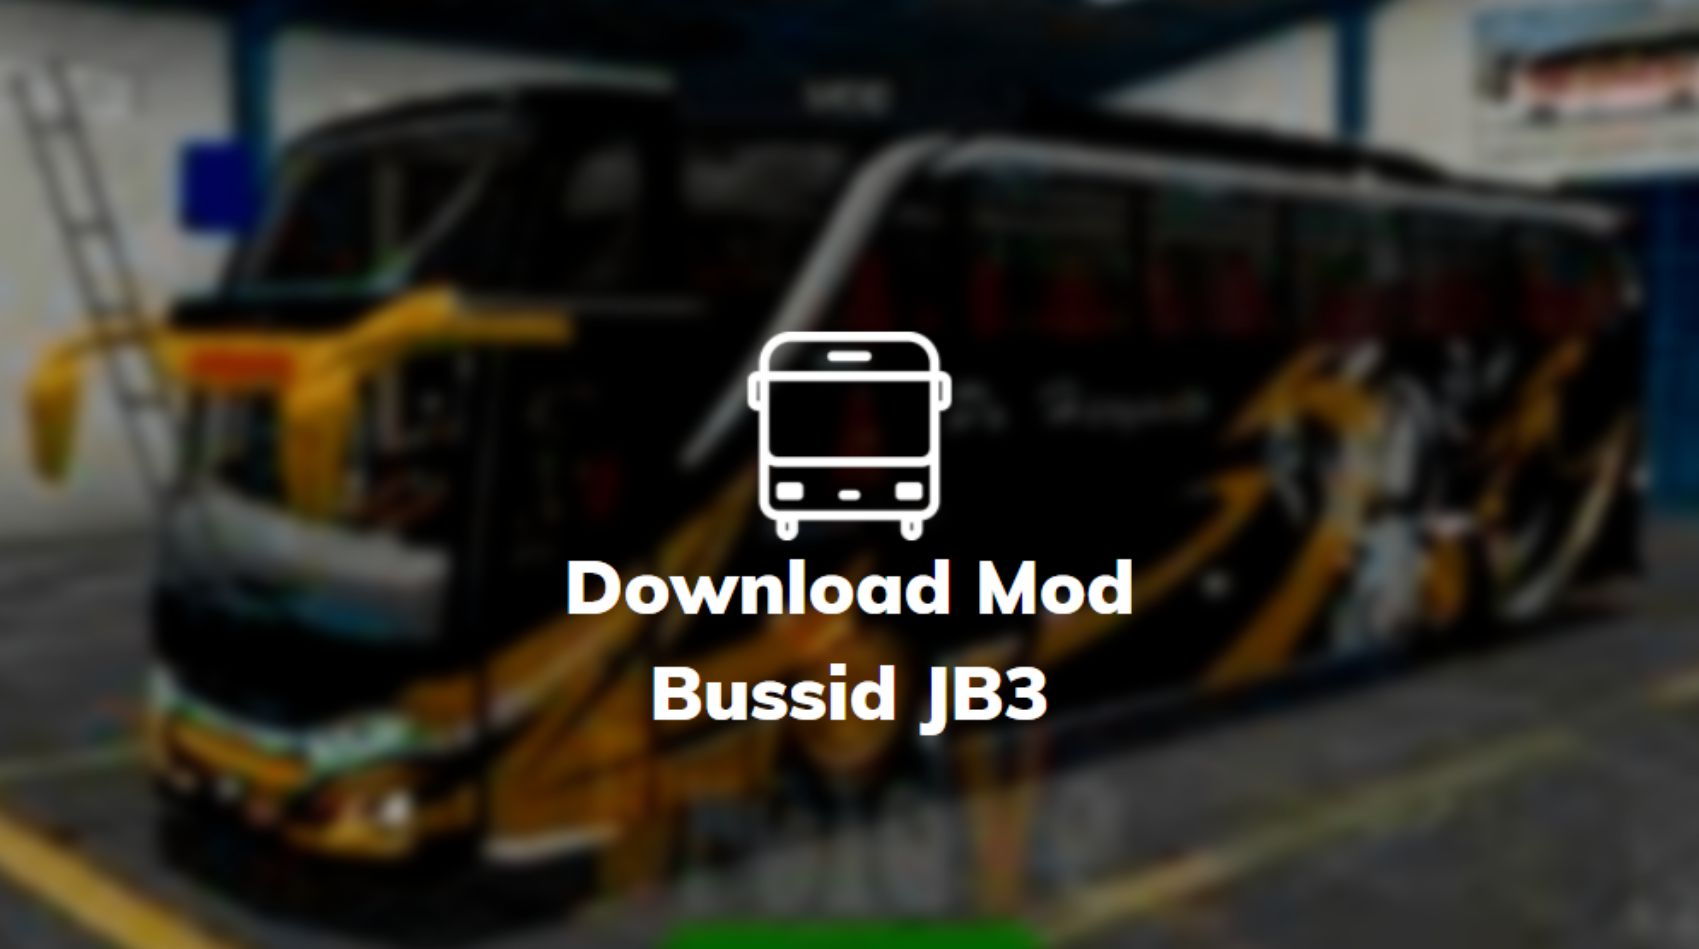 Download Mod Bussid Bus Jb3 Full Strobo. √ 36+ Download Mod Bussid Bus JB3 & JB3+ (HD, SHD, HDD, XHD)